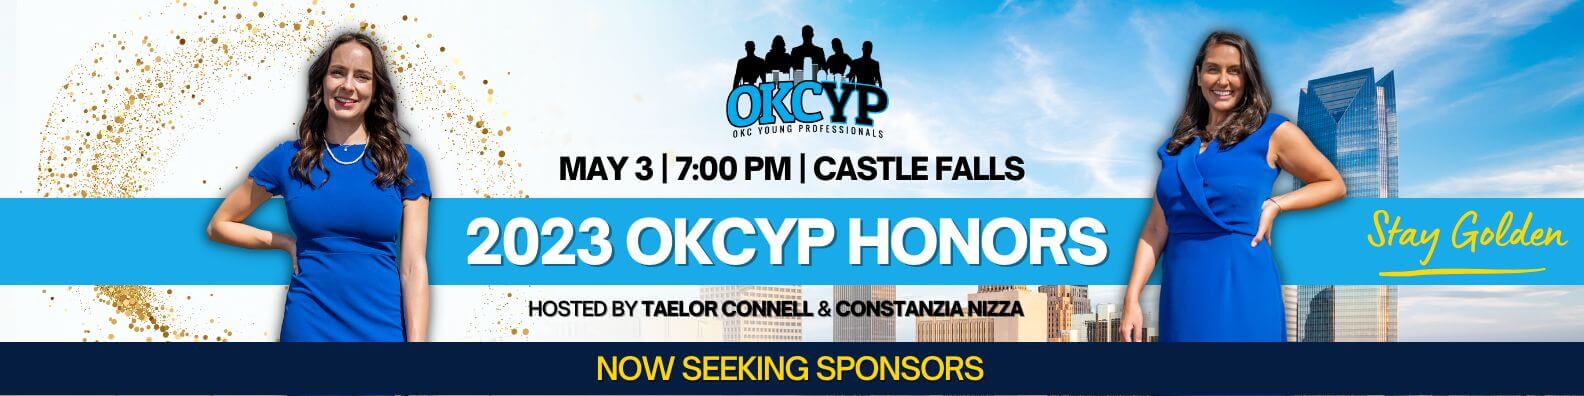 OKCYP Event Ads (2)